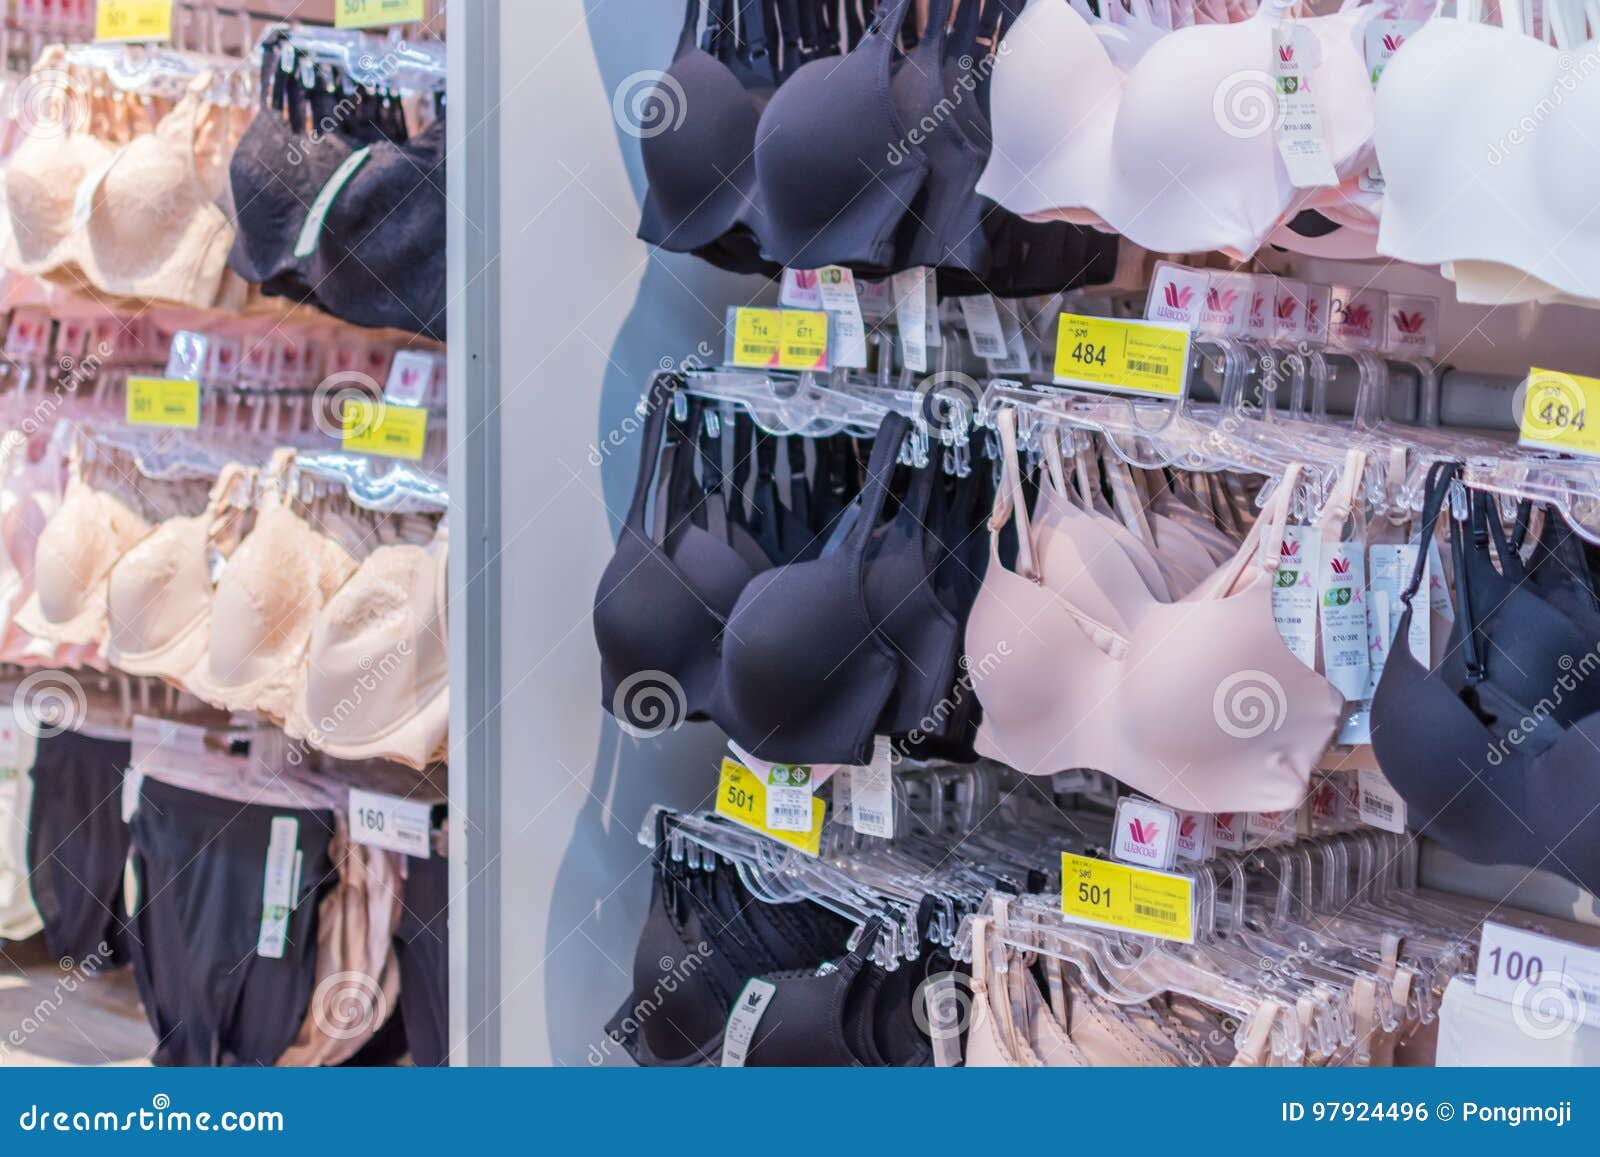 magasins de sous vêtements femme